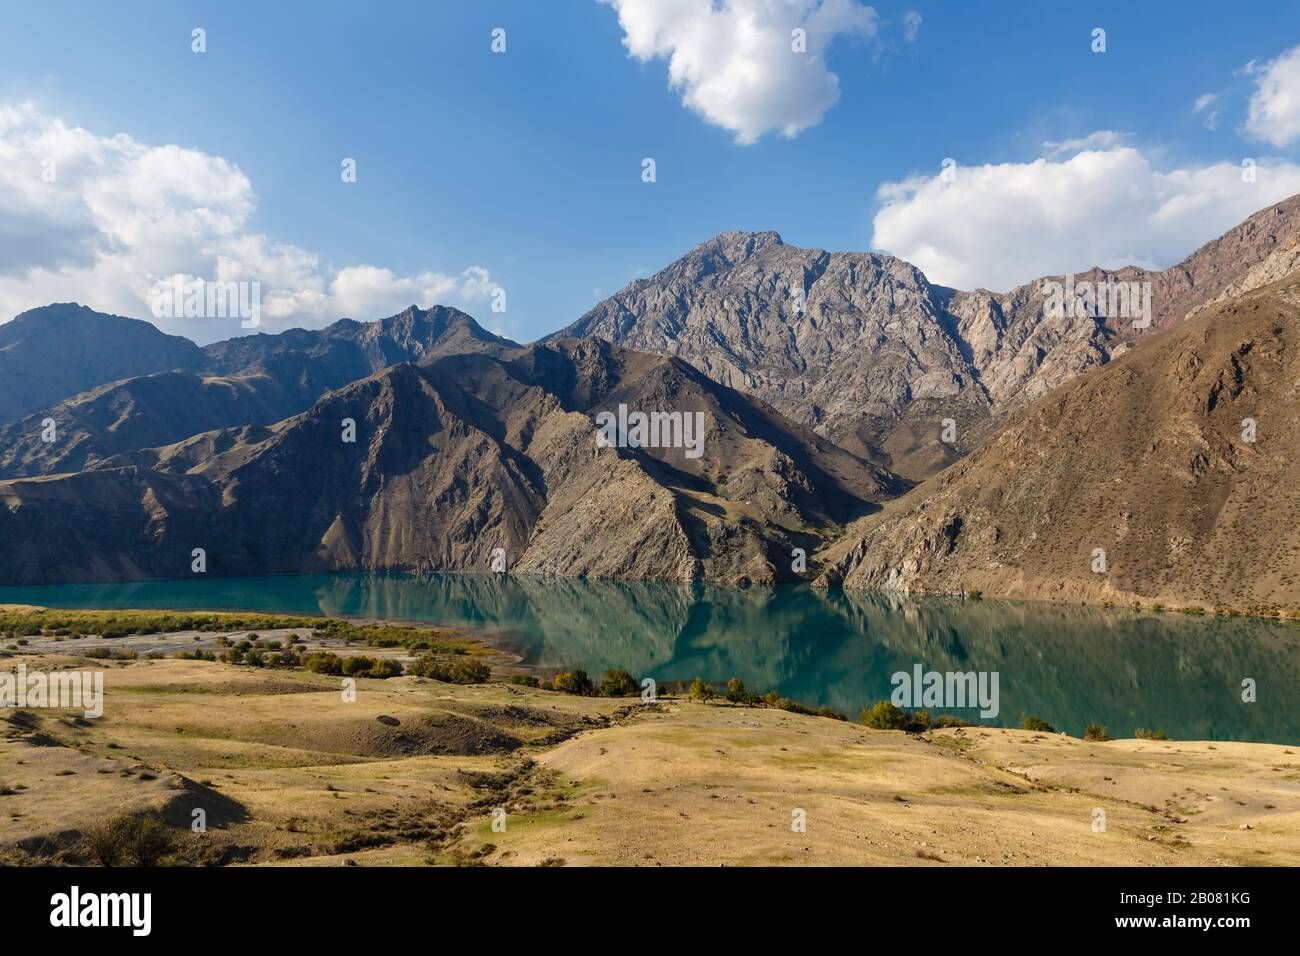 La rivière Naryn, belle rivière de montagne, Toktogul Jalal-Abad région Kirghizstan Banque D'Images